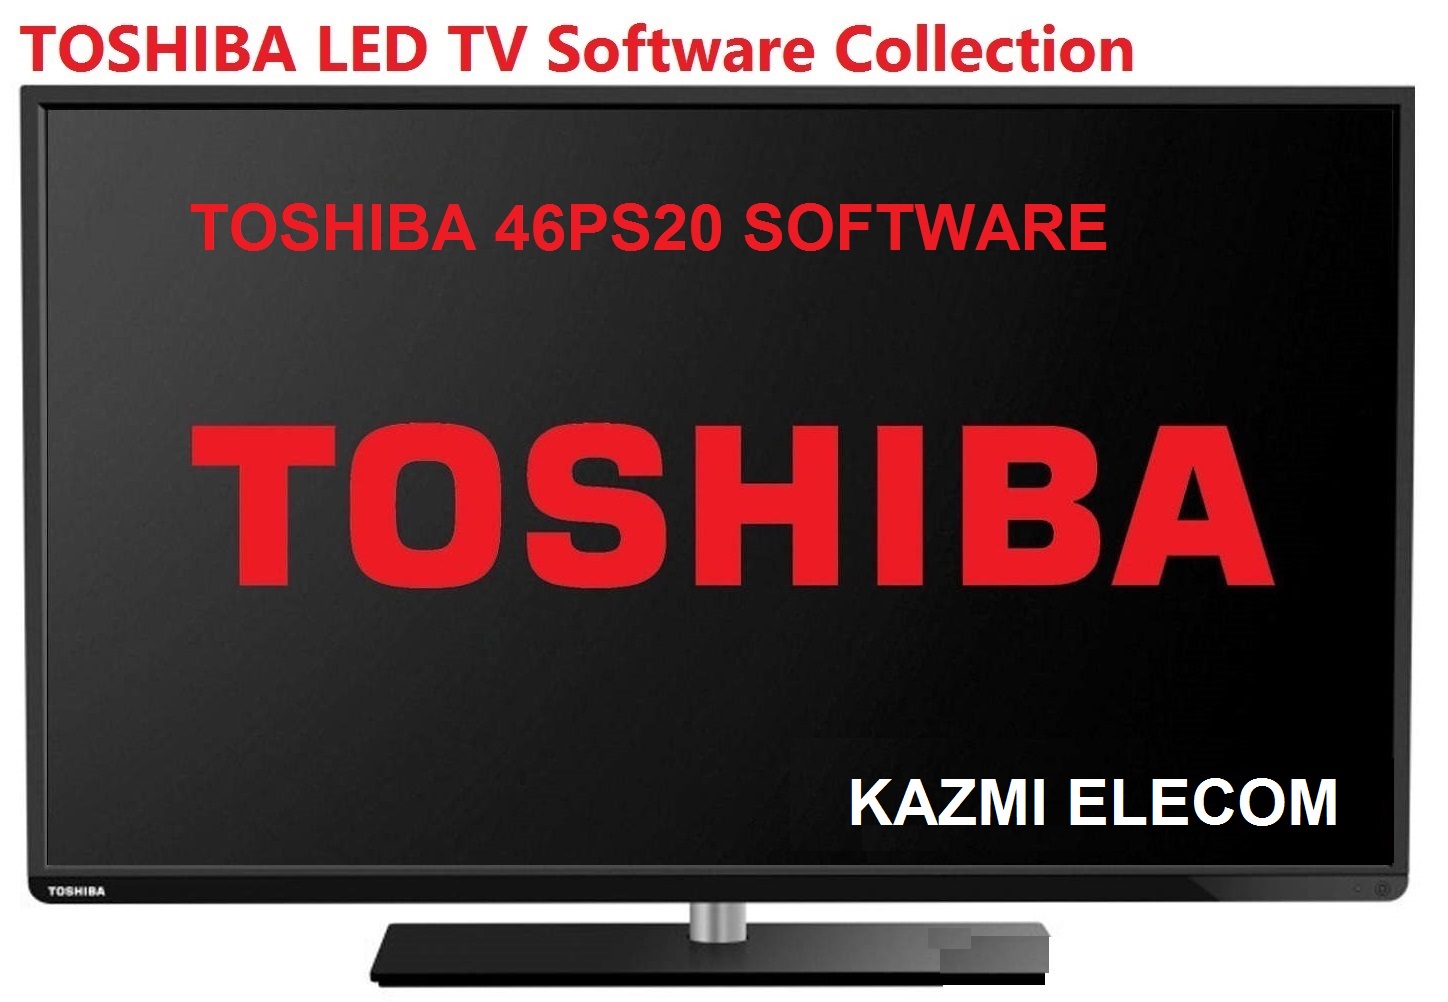 Toshiba 46Ps20